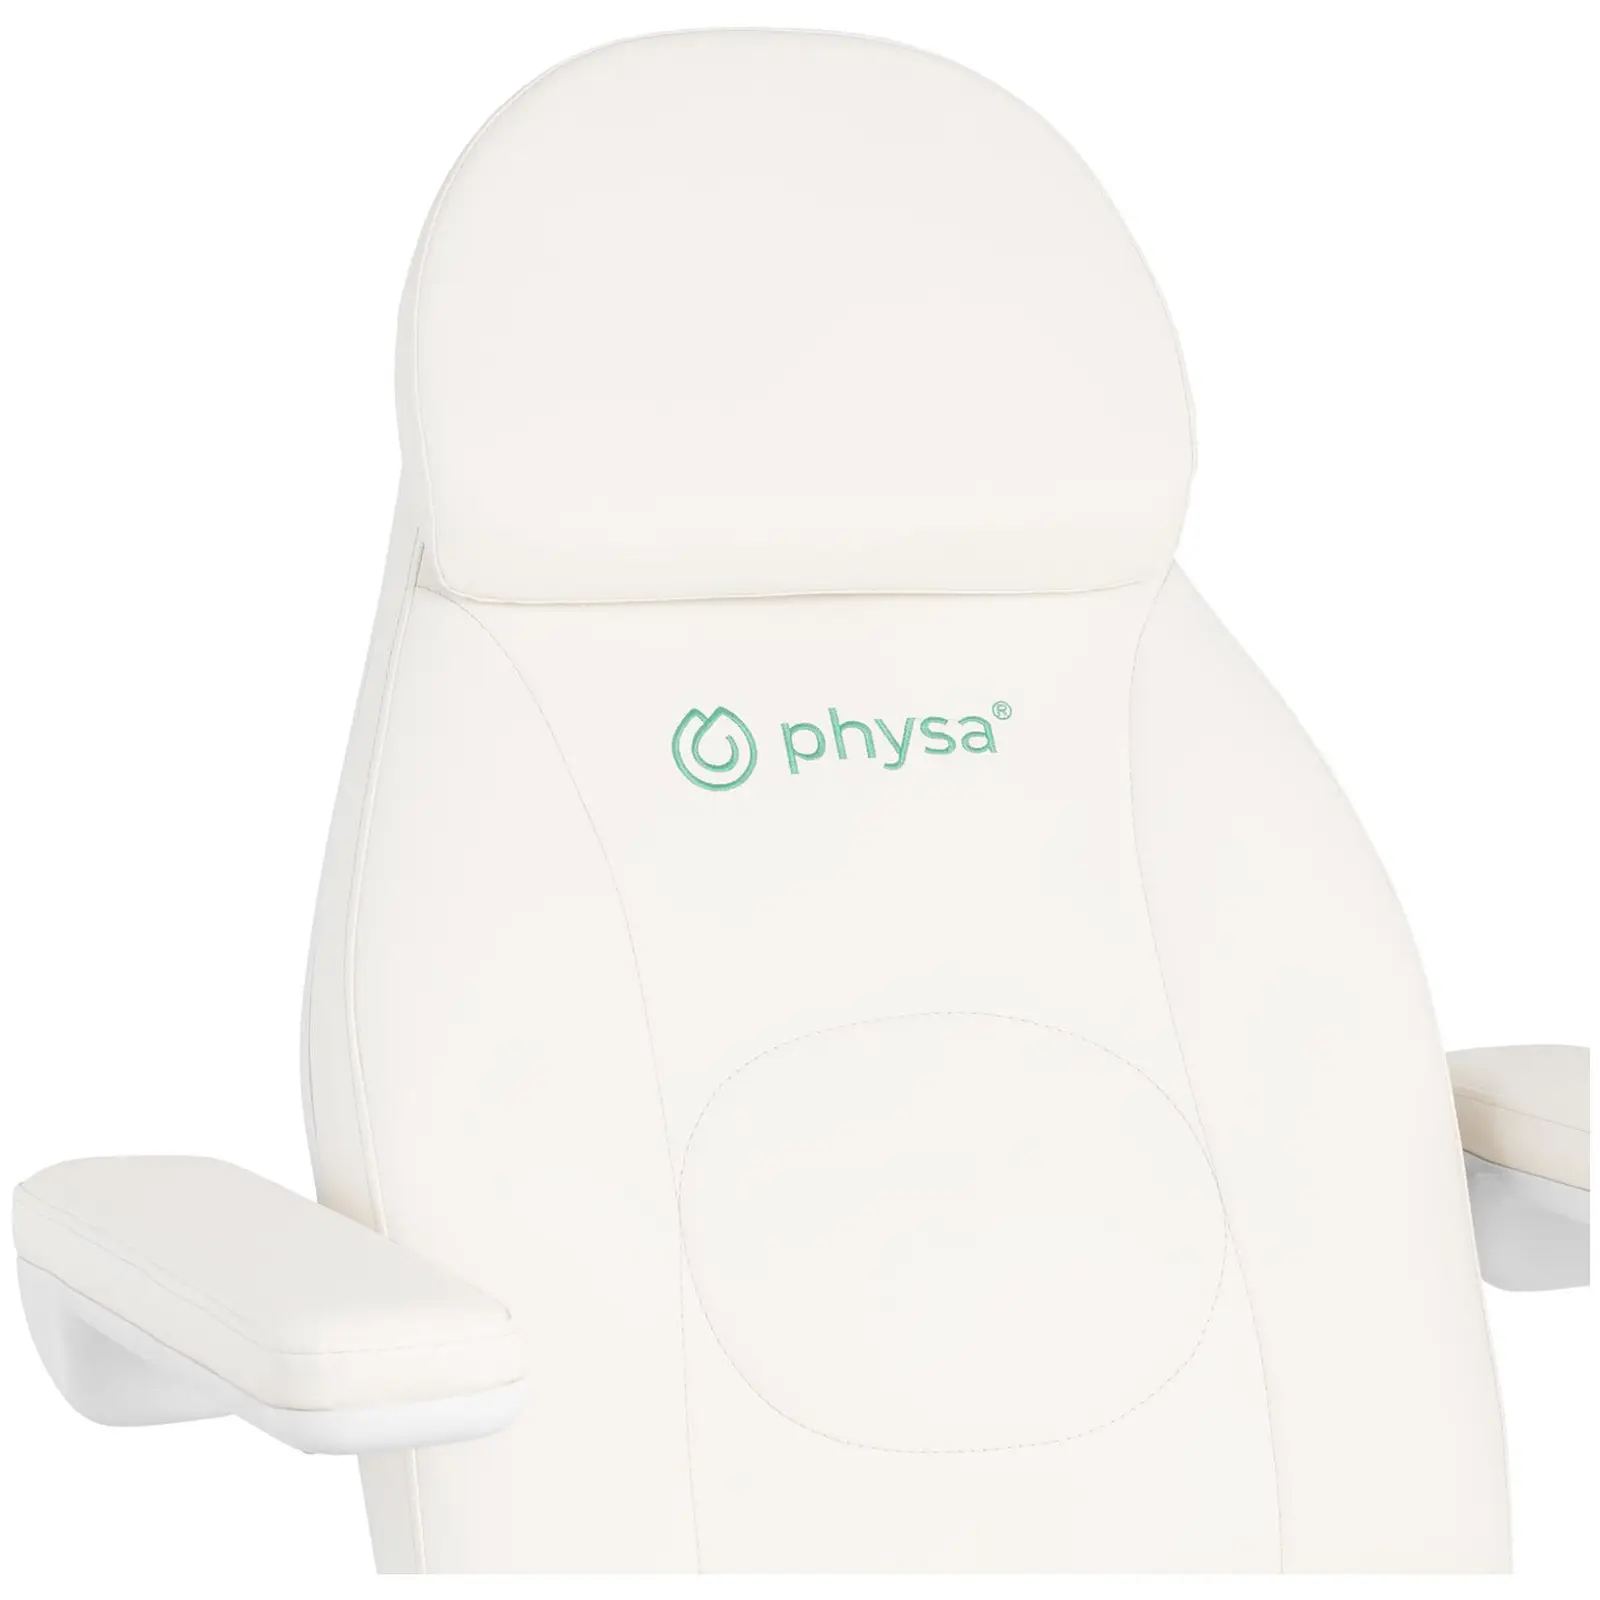 Kozmetikai ágy - elektromos - gurulós székkel - 350 W - max. 150 kg egyenként - fehér